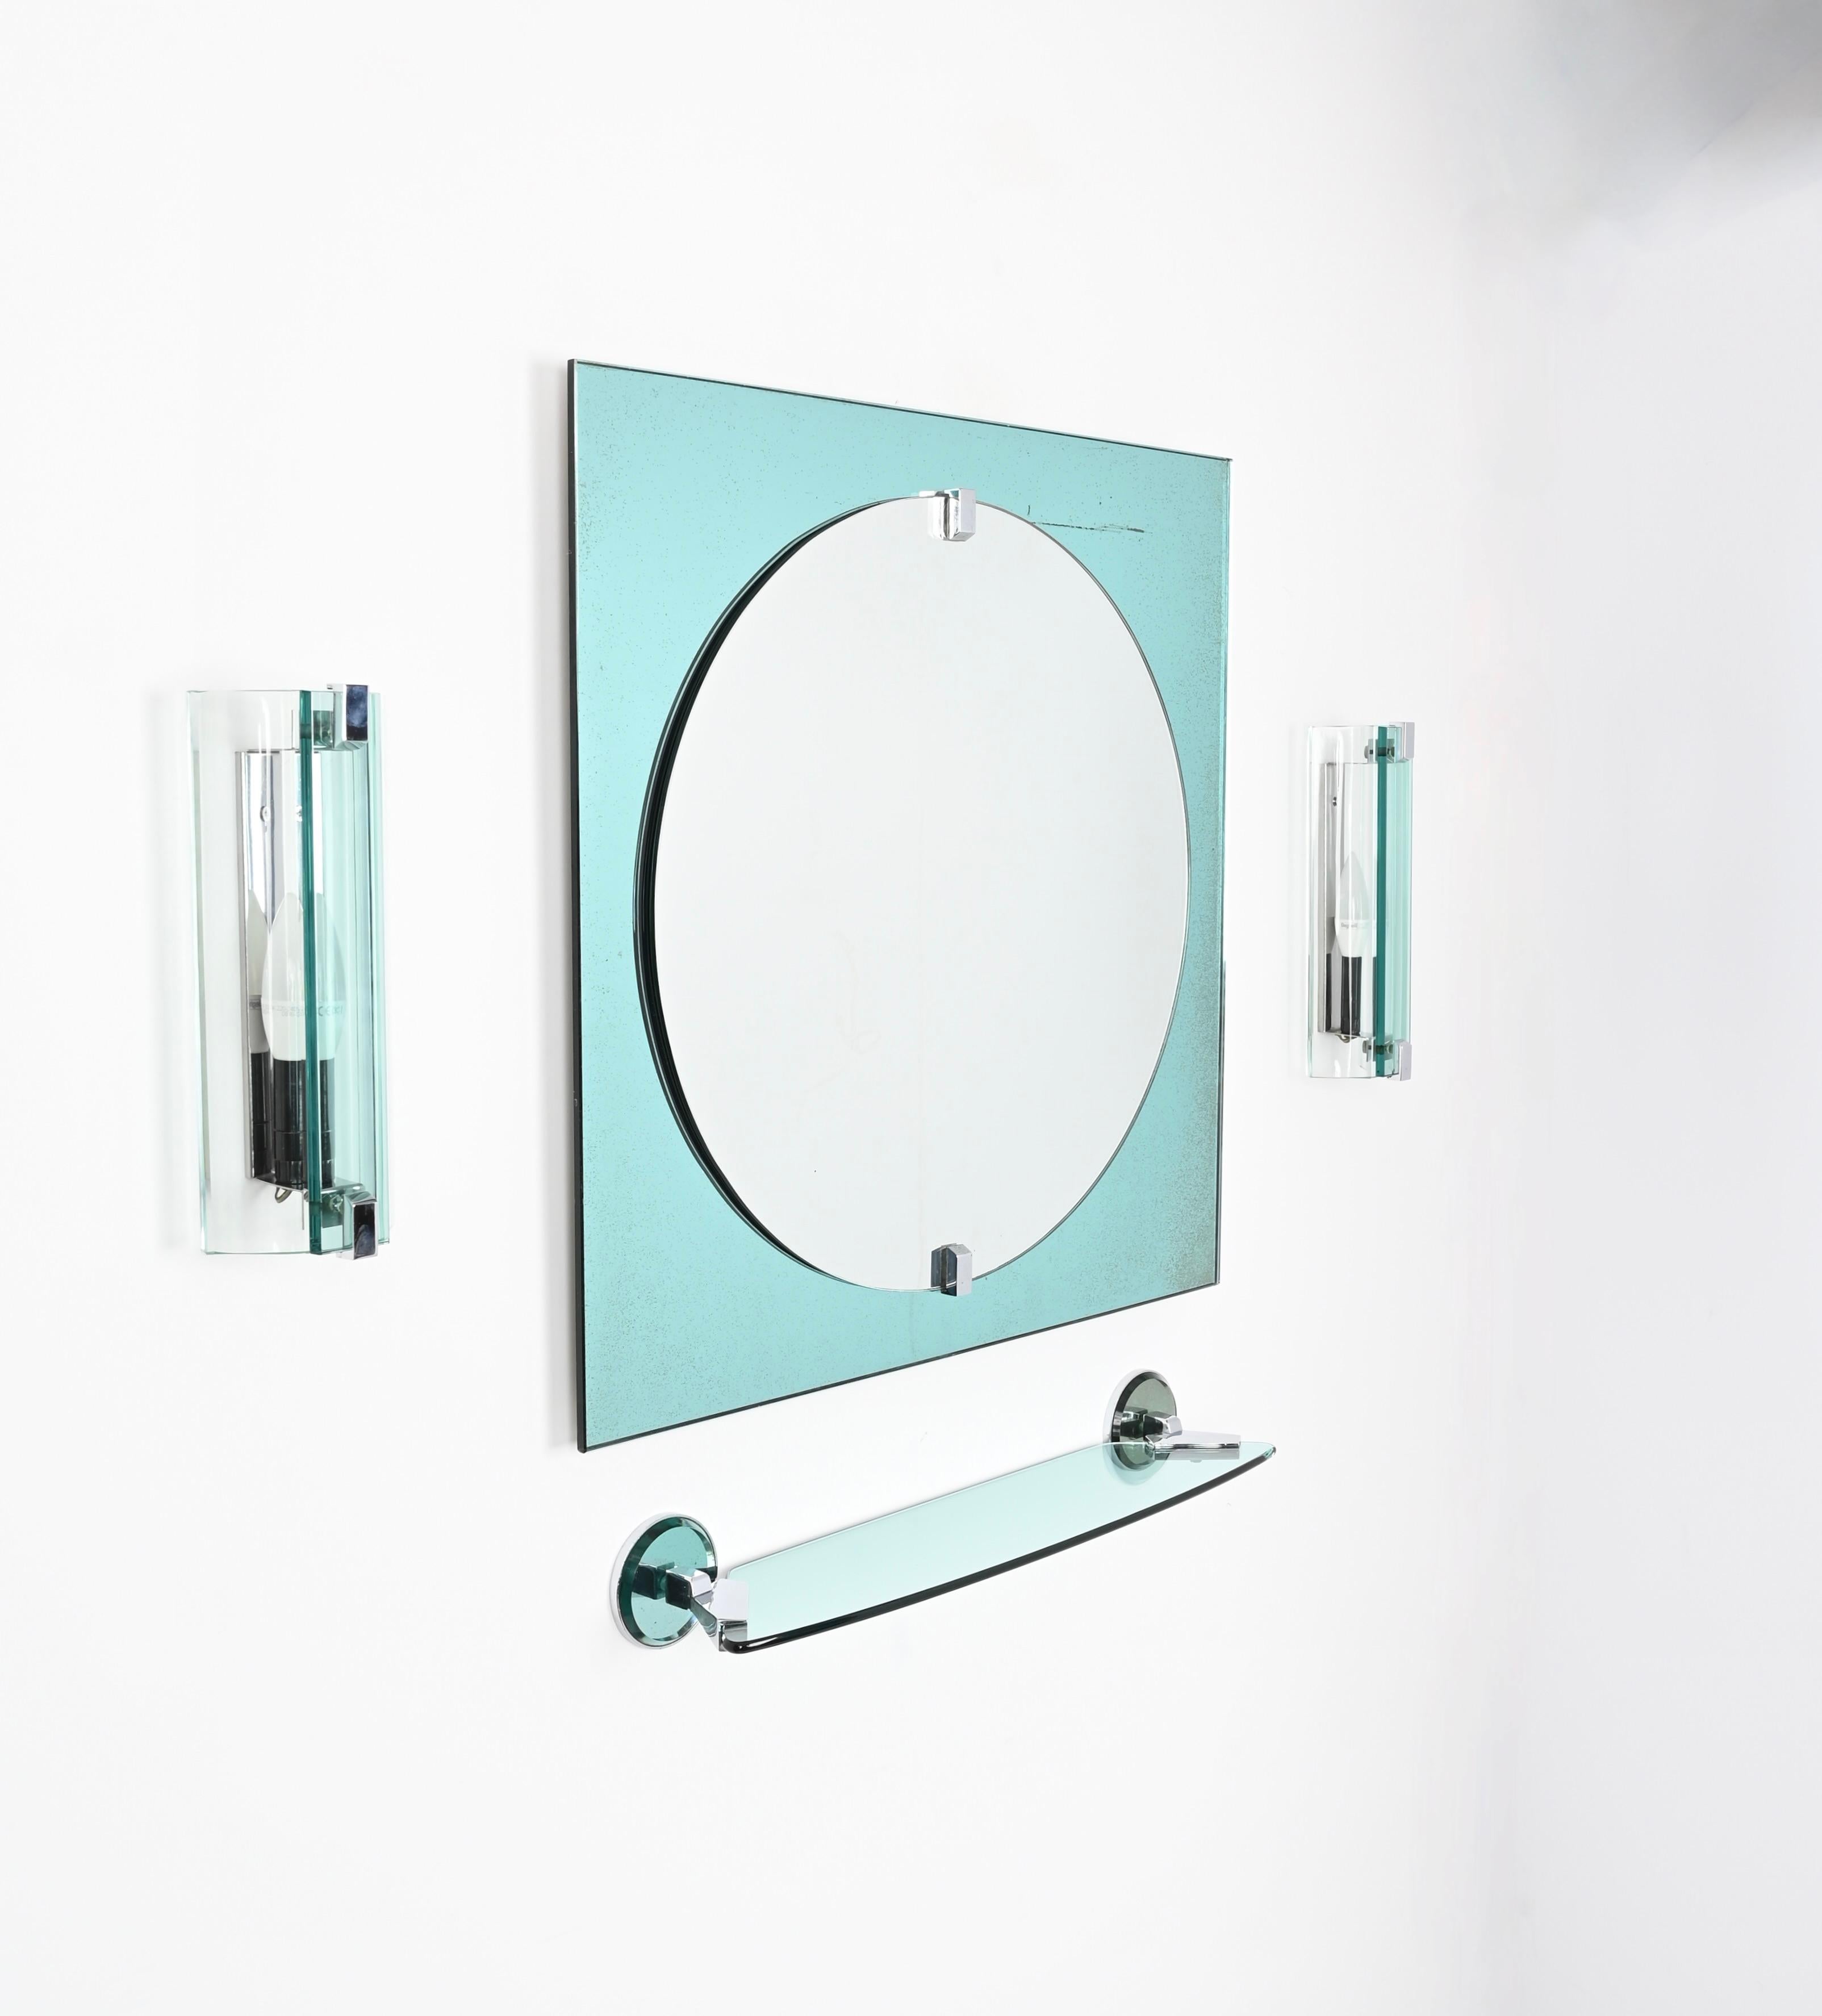 Magnifique ensemble de salle de bain italien en verre d'art de couleur bleu tiffany et acier chromé comprenant un miroir carré, deux appliques et une étagère murale. Ces objets fantastiques ont été fabriqués par Veca en Italie dans les années 1970